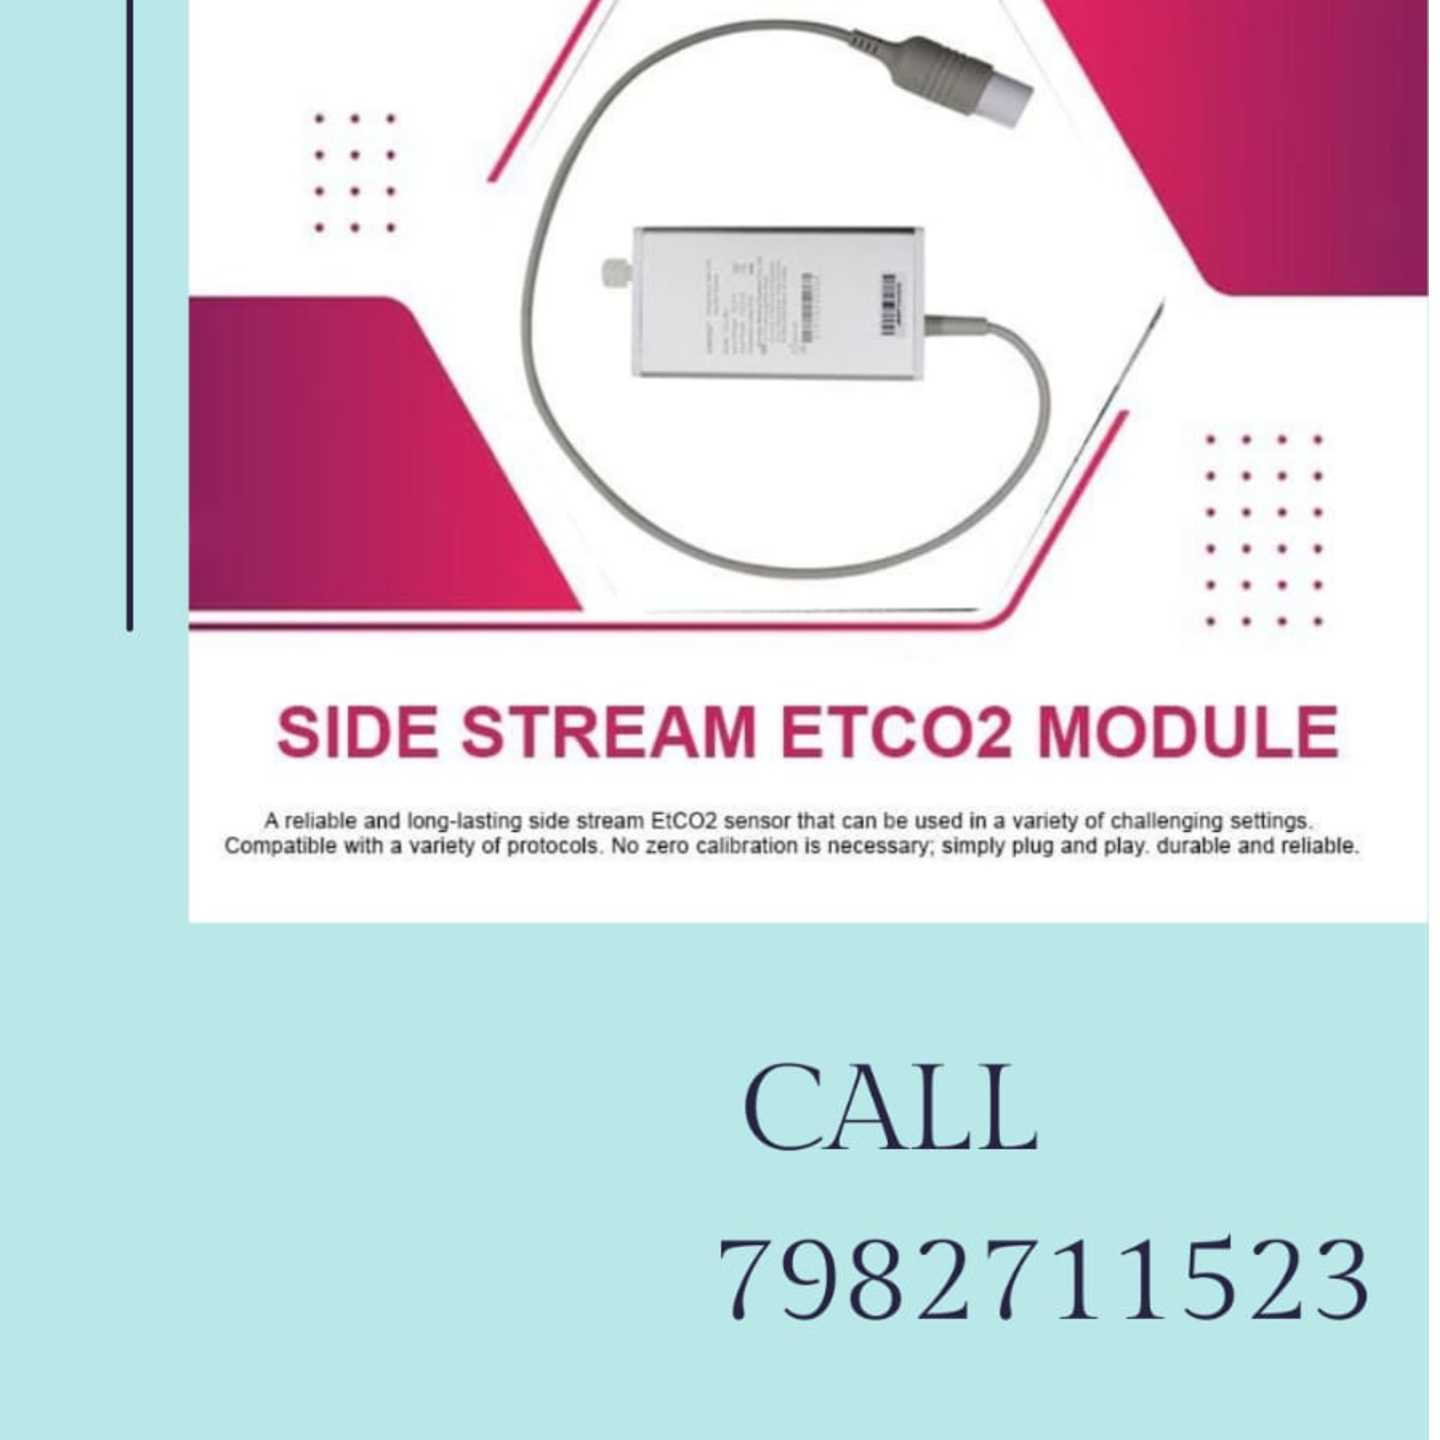 Etc02 Module -side stream for Contec Monitors